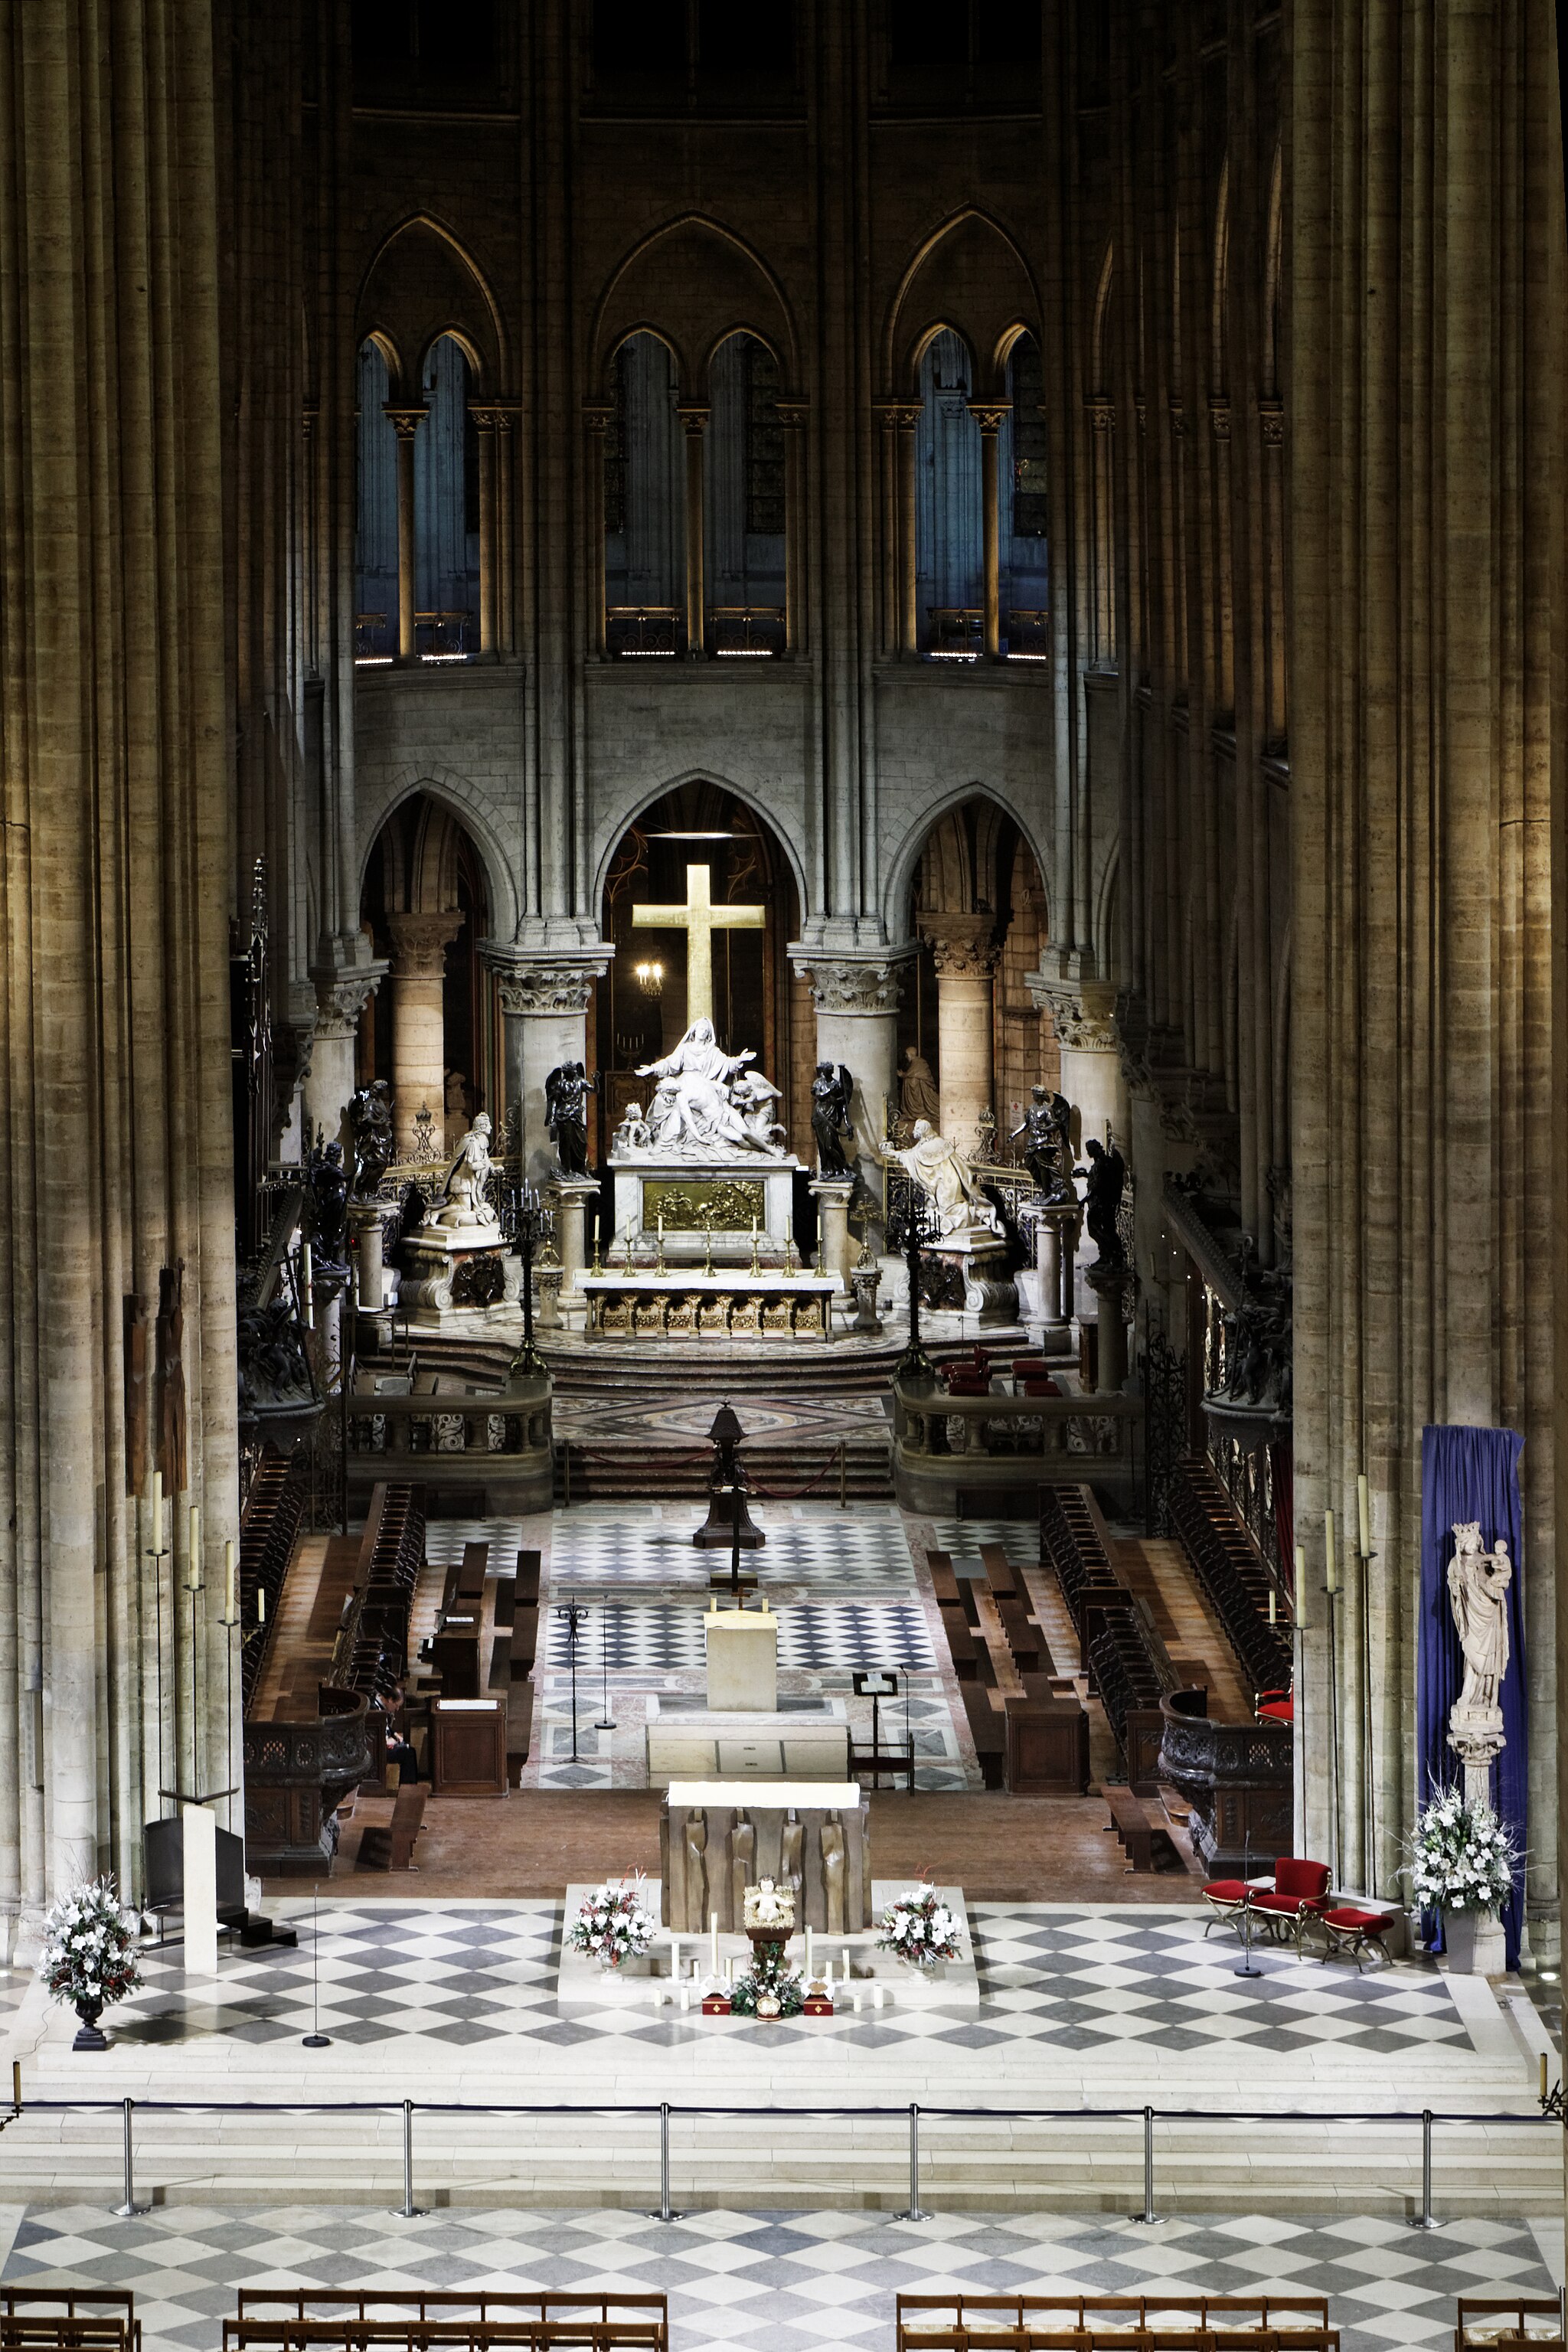 Notre-Dame de Paris - Tapis monumental du chœur - 012. Thesupermat. Reshared under CC-BY-SA 3.0. https://commons.wikimedia.org/wiki/File:Notre-Dame_de_Paris_-_Tapis_monumental_du_ch%C5%93ur_-_012.jpg